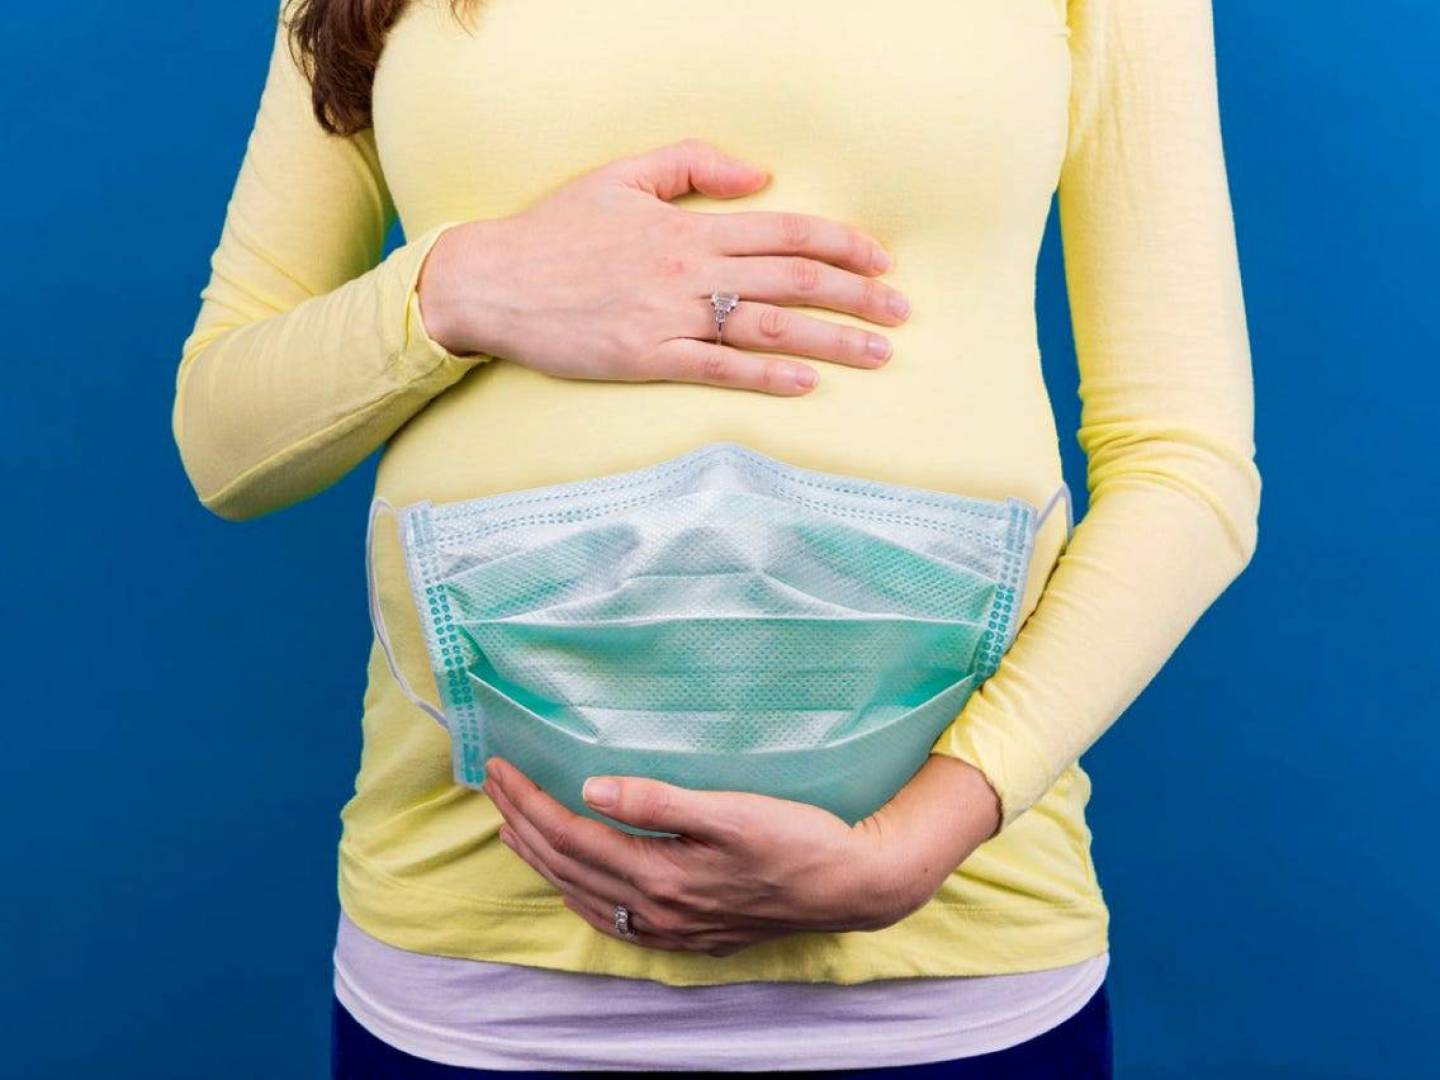 كورونا والمرأة الحامل والمخاطر الصحية